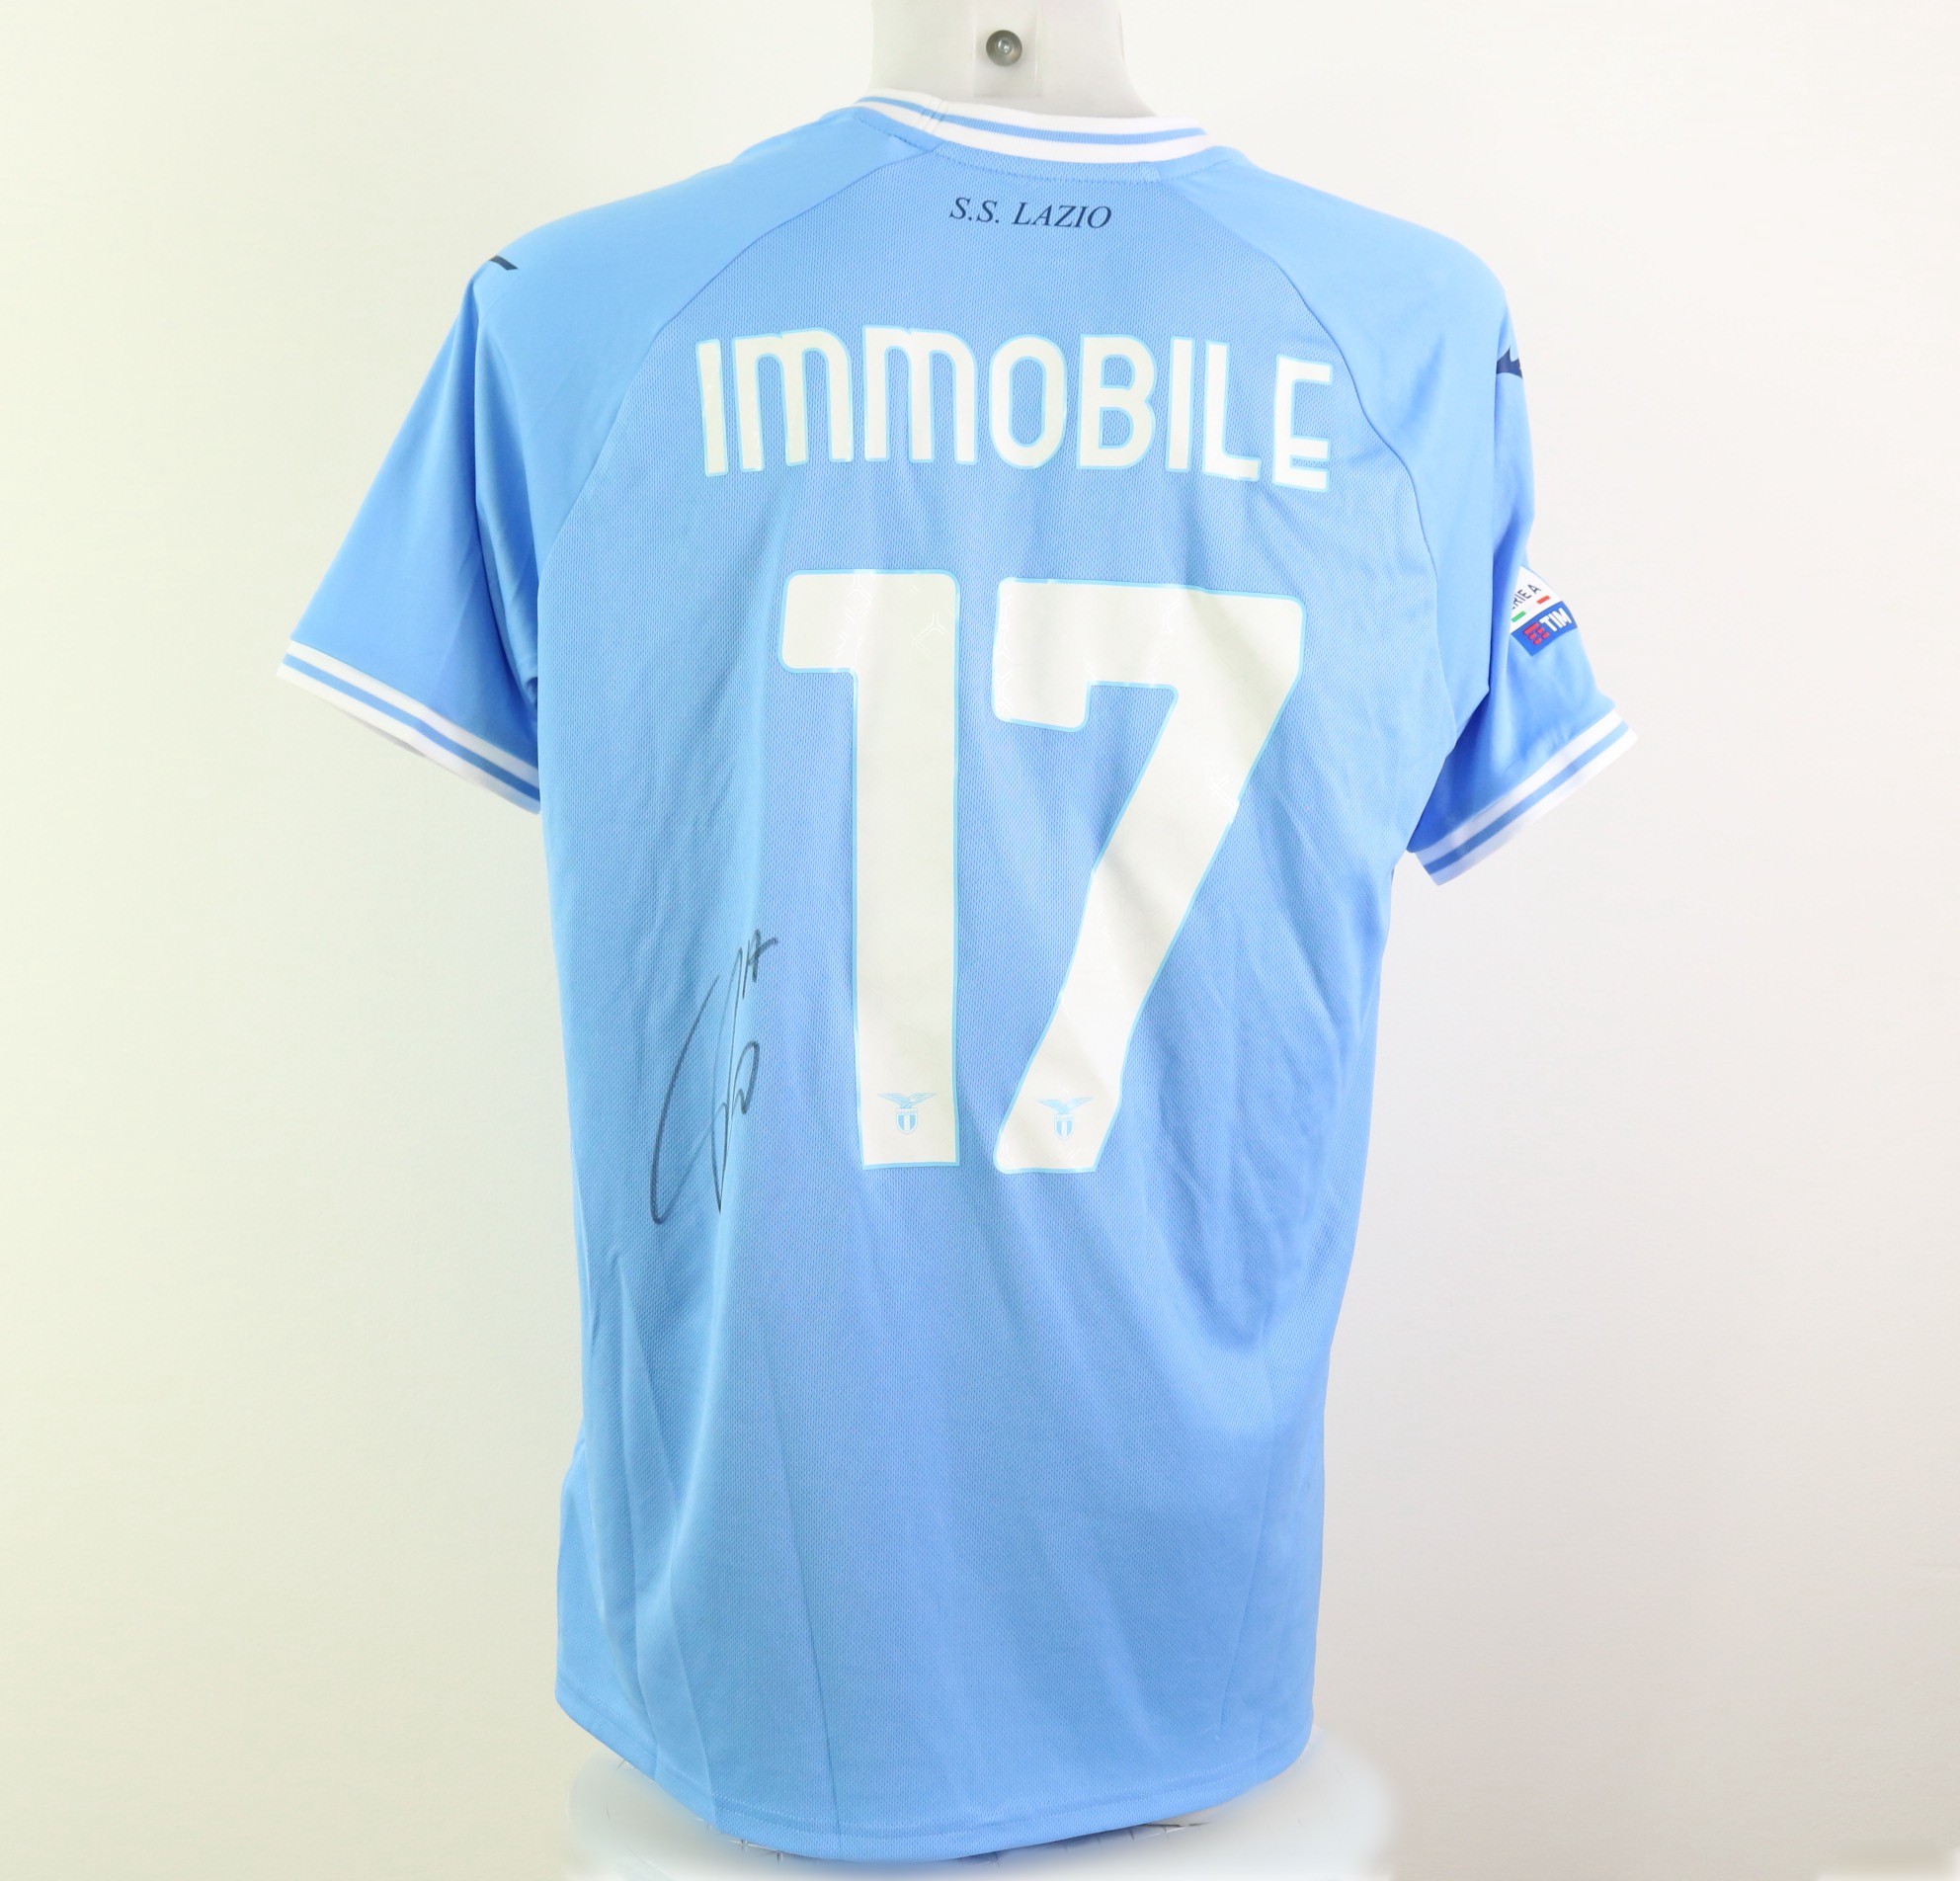 Maglia ufficiale Immobile Lazio, 2022/23 - Autografata - CharityStars